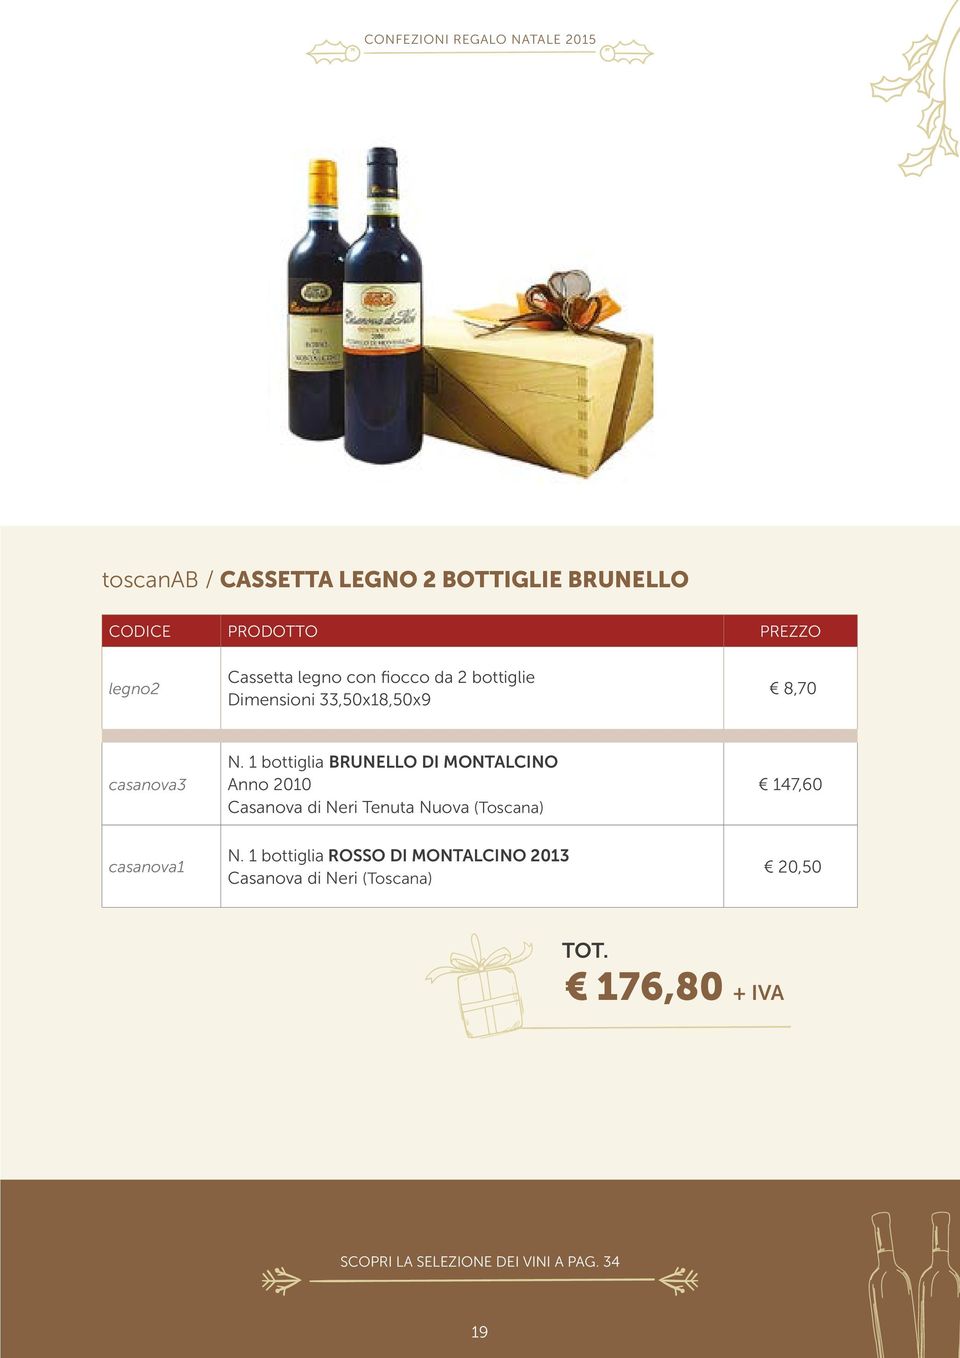 1 bottiglia brunello di montalcino Anno 2010 Casanova di Neri Tenuta Nuova (Toscana)